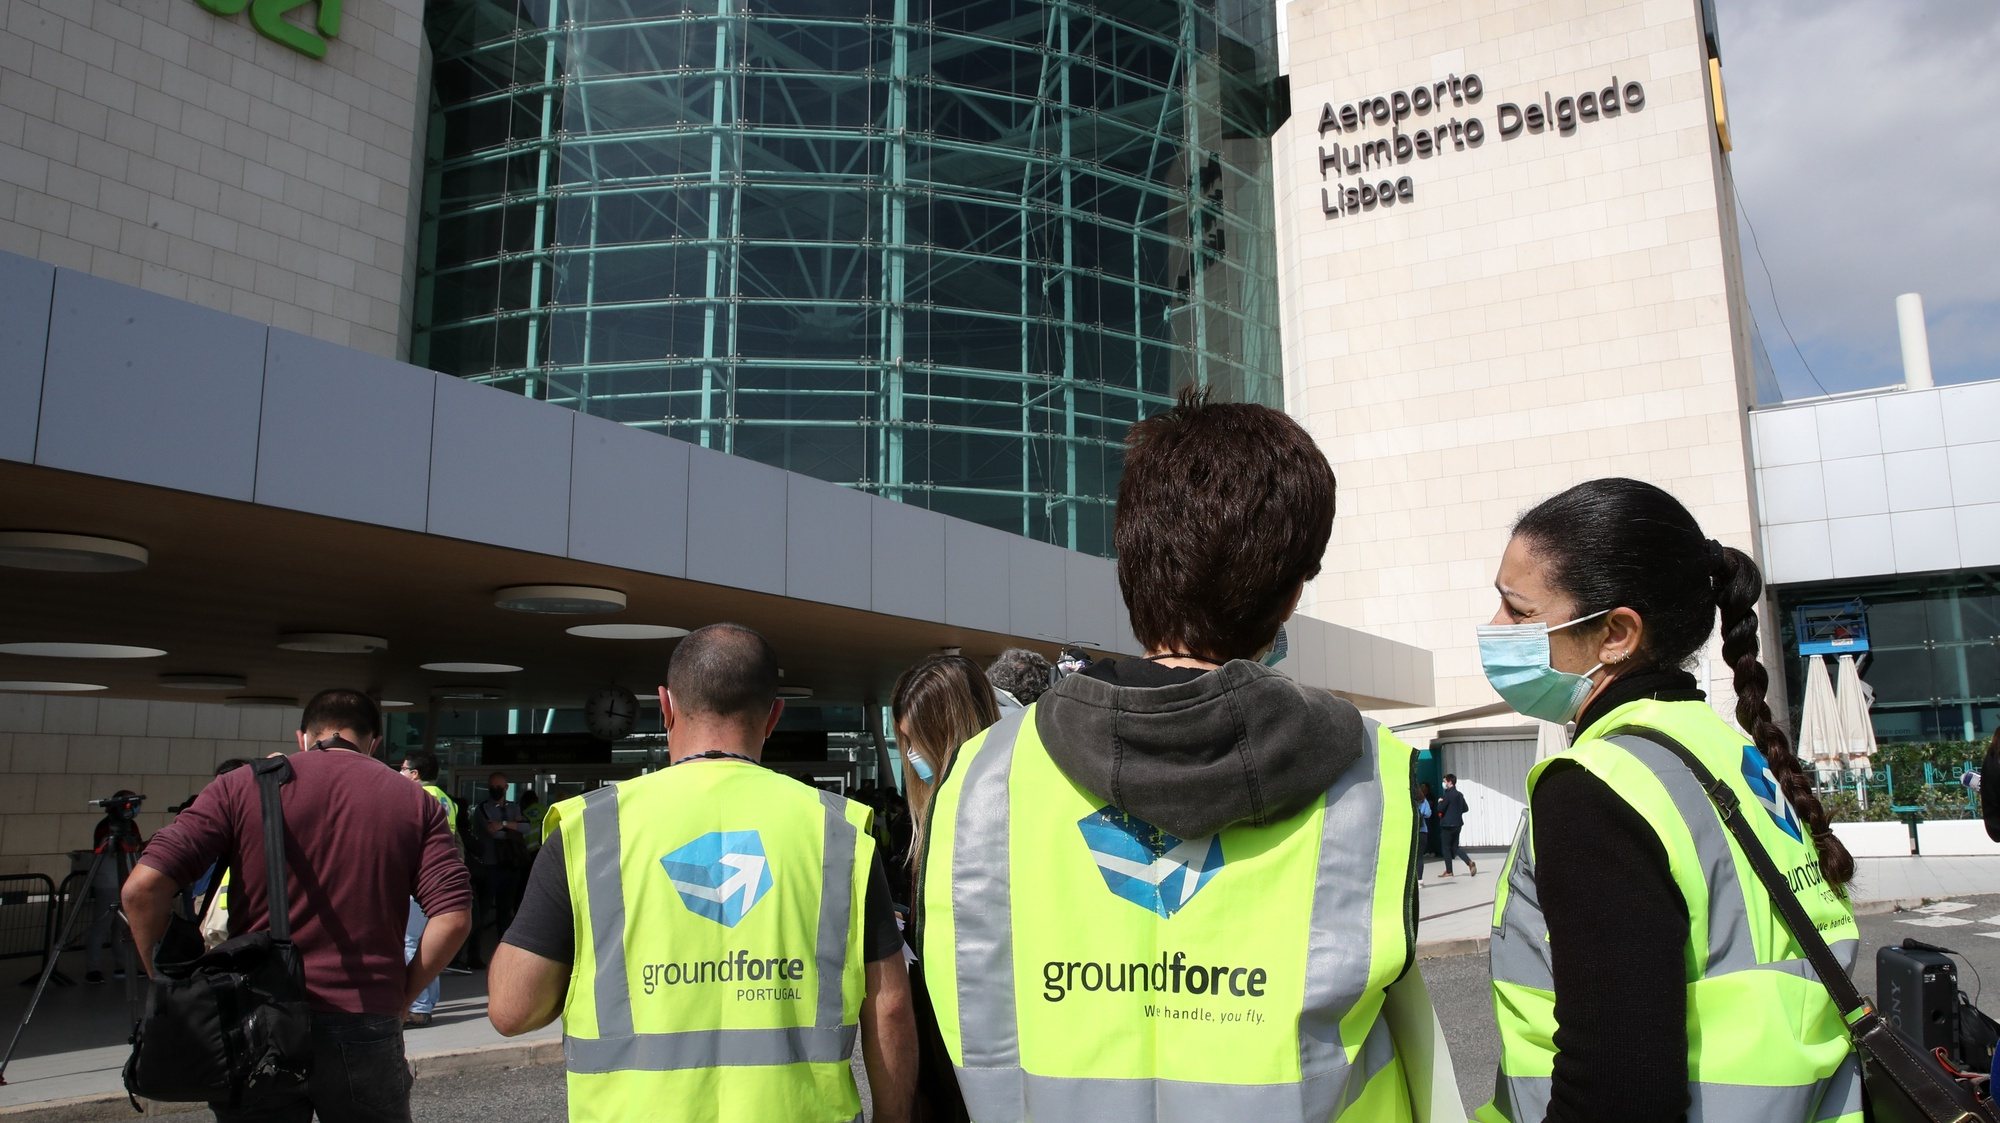 Manifestação de trabalhadores da SPdH/Groundforce, organizada pelo movimento SOS handling, em protesto pelo não pagamento de salários e despedimentos anunciados 02 de março de 2021, junto à entrada da estação do Aeroporto do Metropolitano de Lisboa.   MANUEL DE ALMEIDA/LUSA